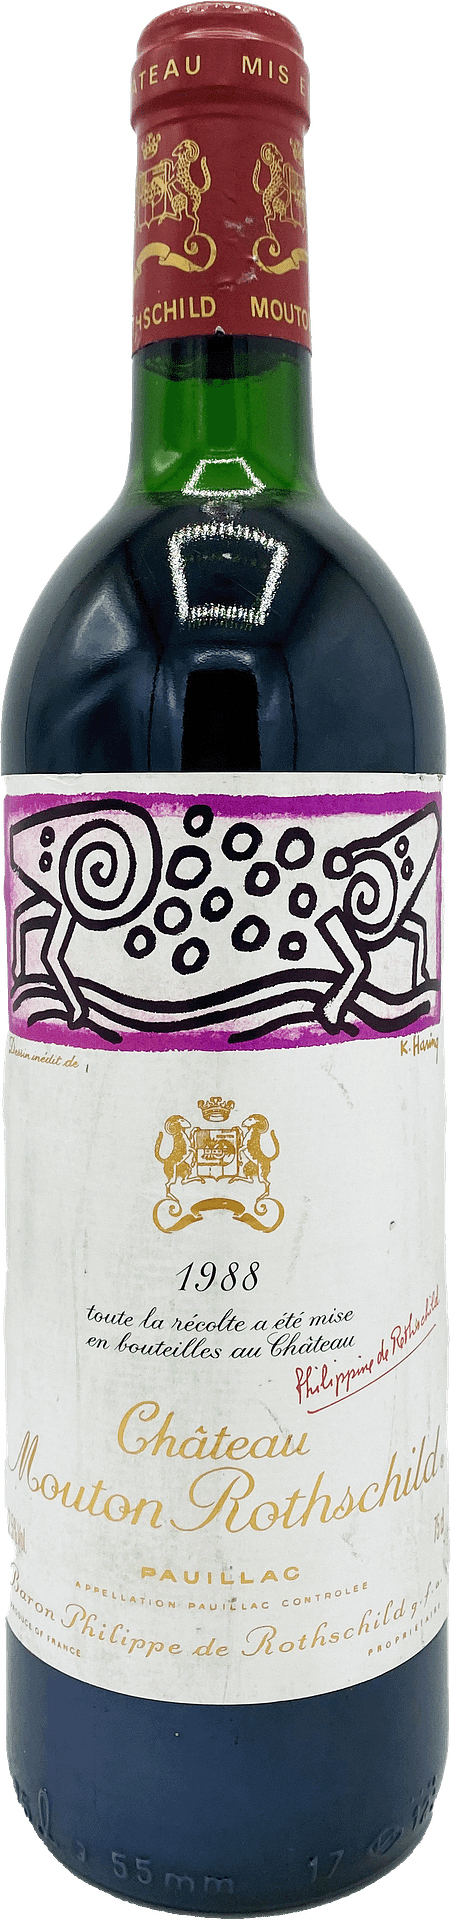 Château Mouton Rothschild 1988 - Pauillac - 1er GCC - Rouge - 75cL ...